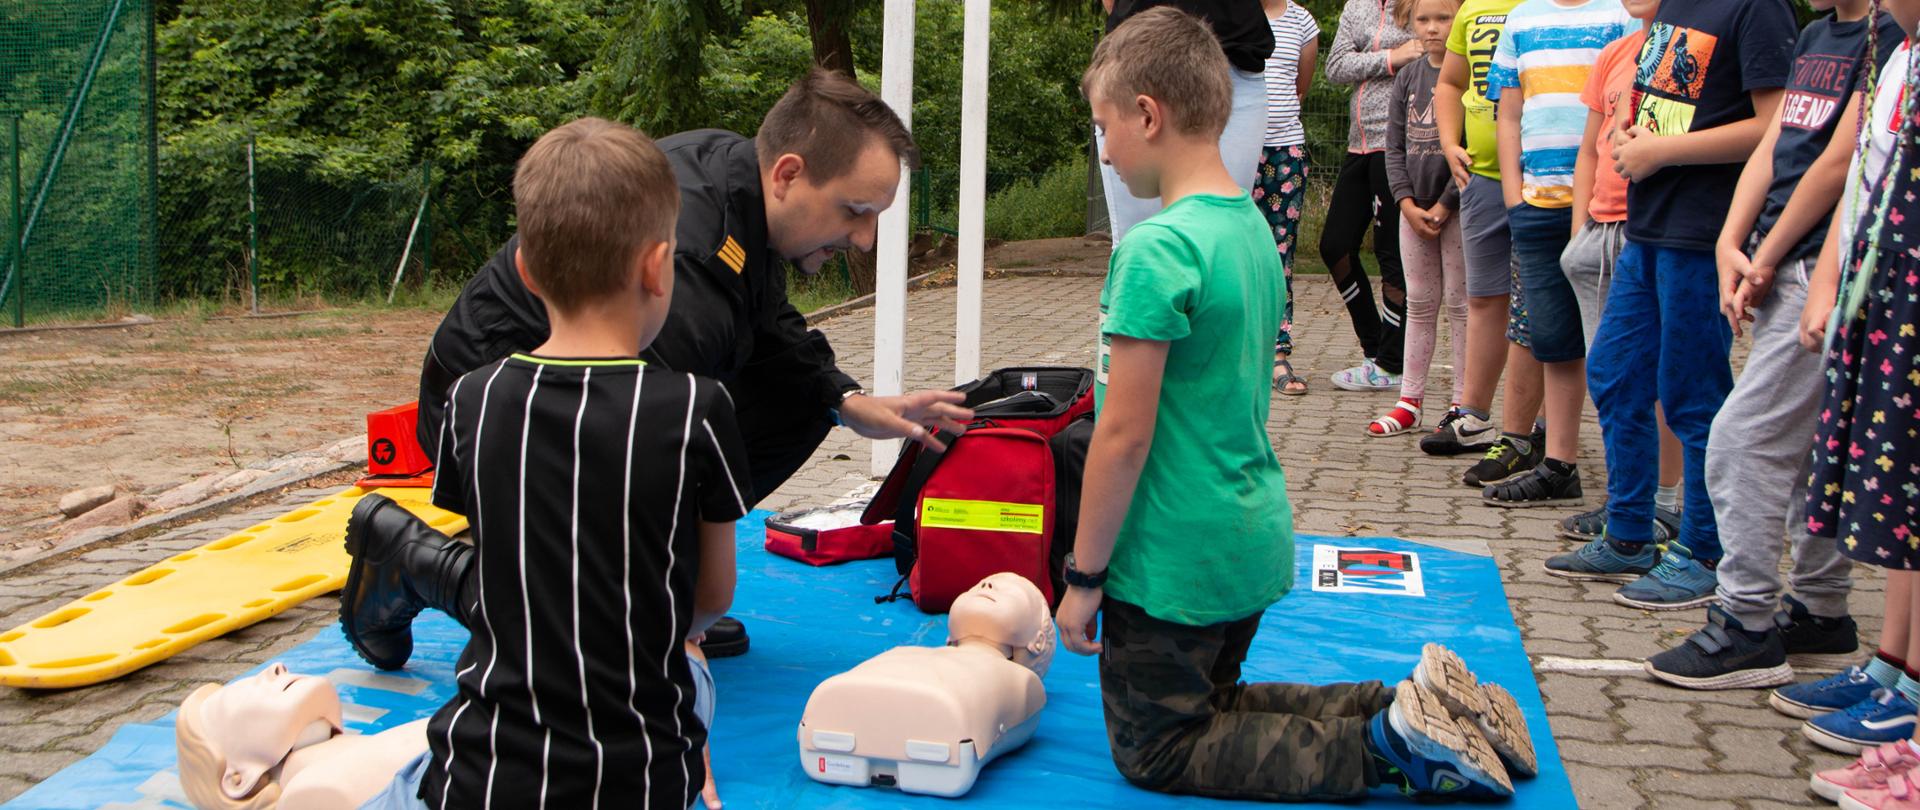 Na zdjęciu widać grupę dzieci podczas zajęć praktycznych z pierwszej pomocy 